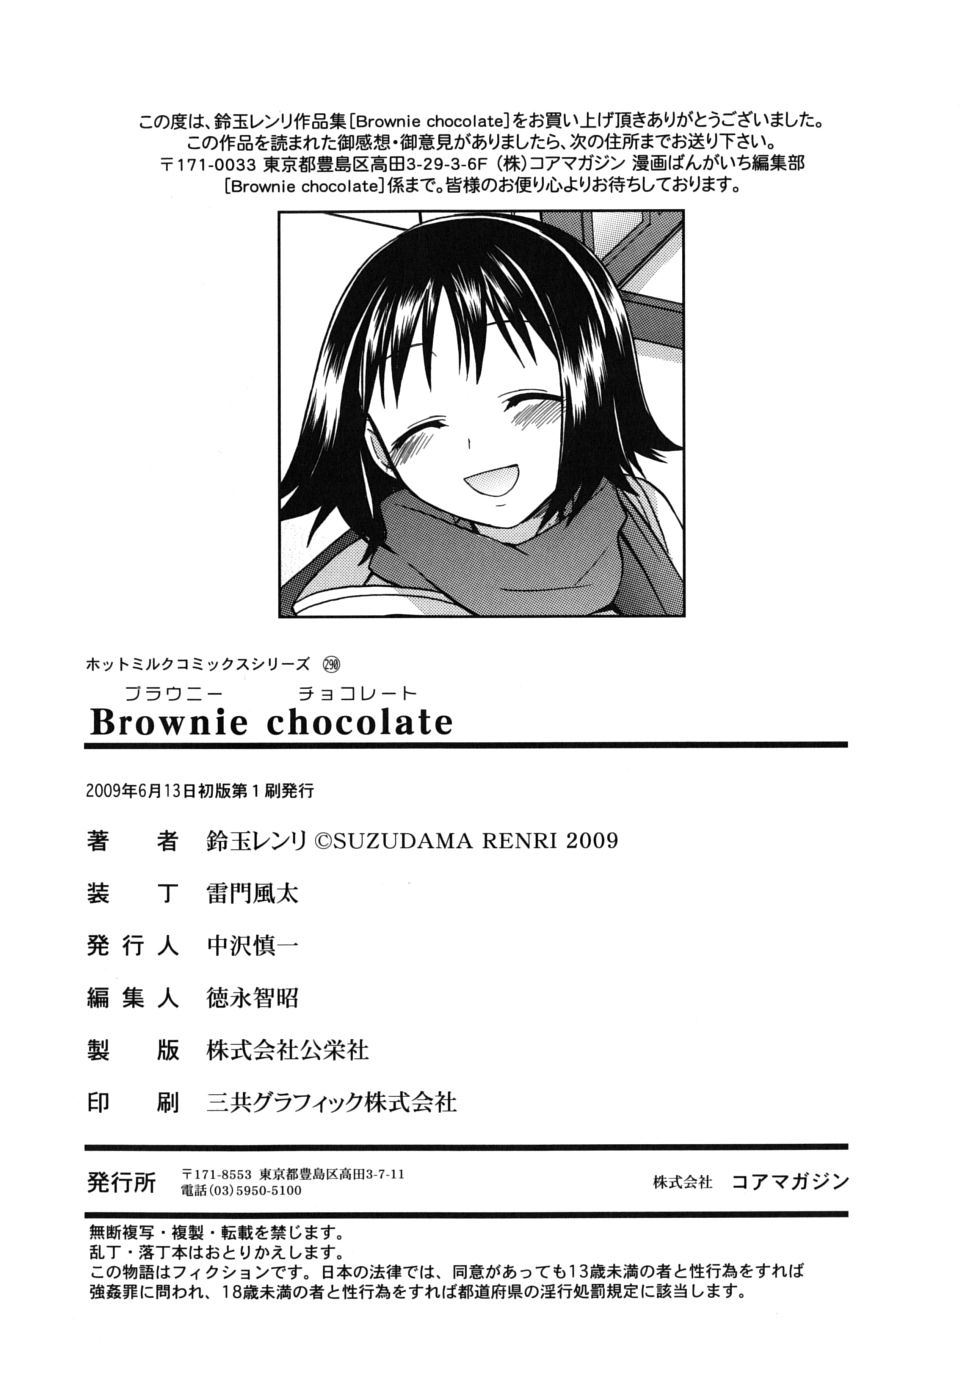 [鈴玉レンリ] Brownie chocolate